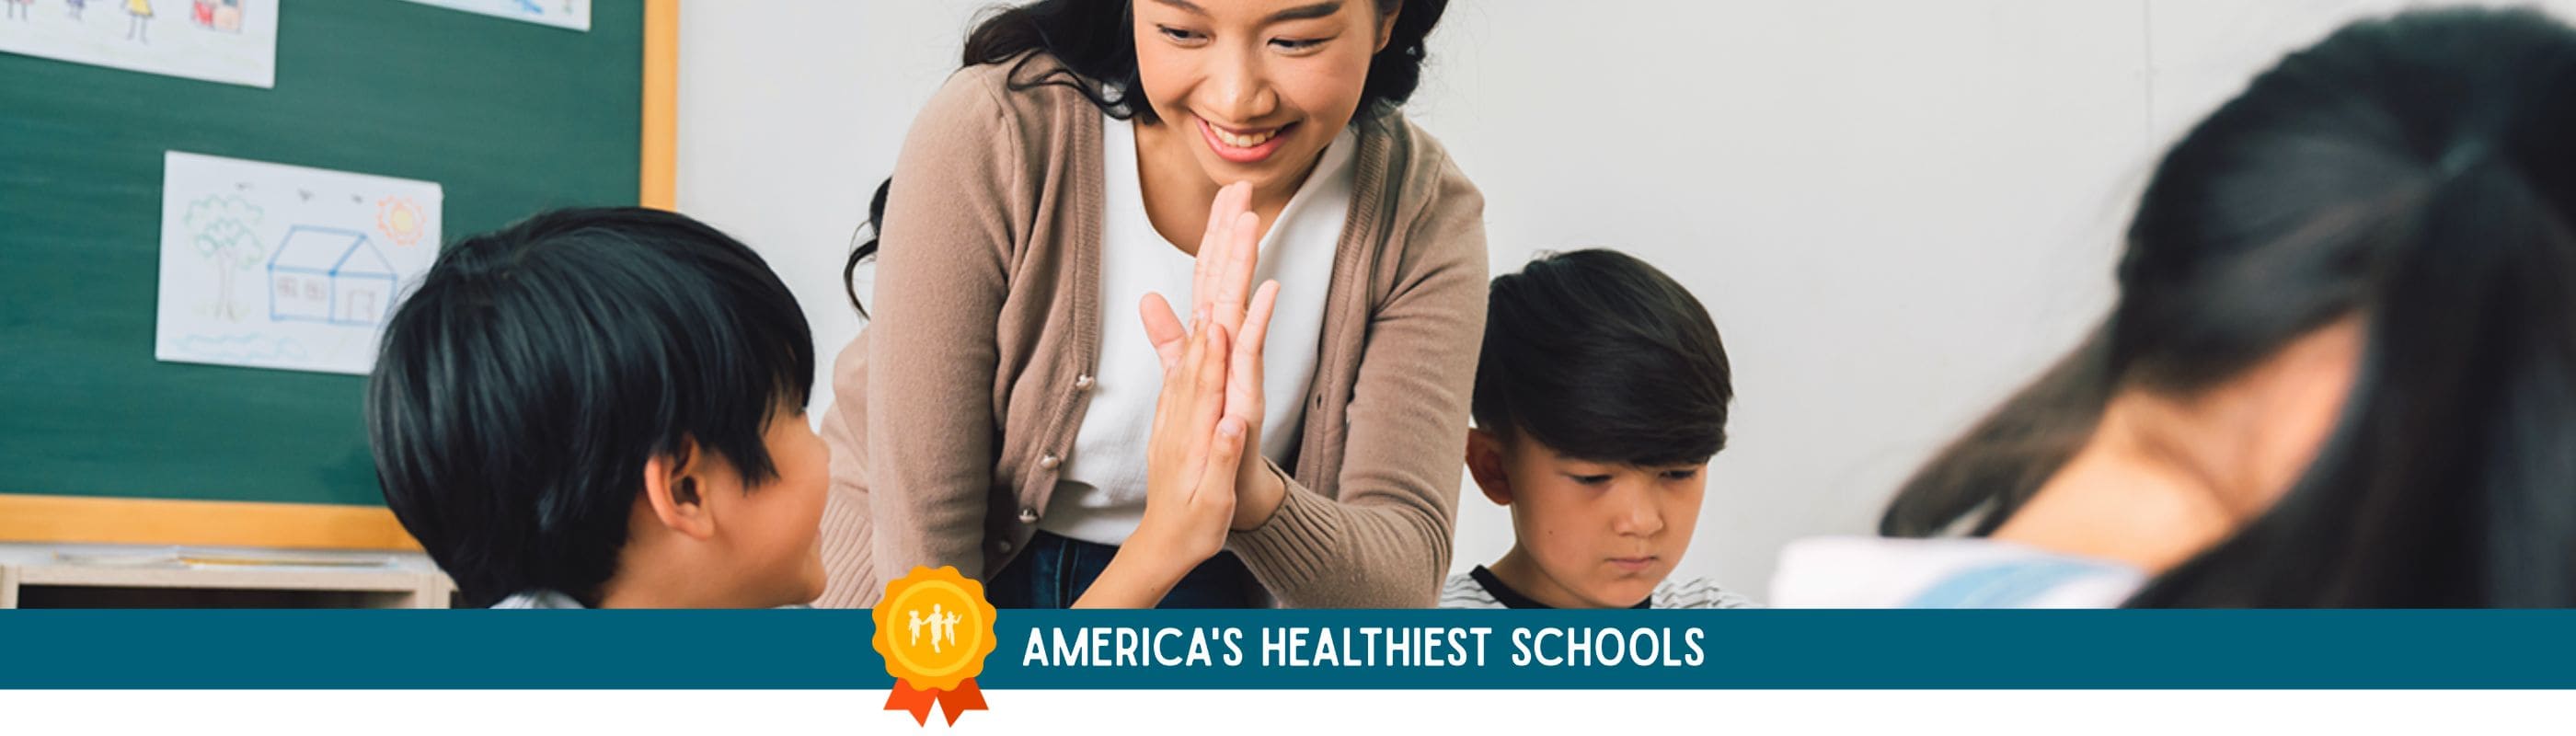 America's Healthiest Schools 2022 banner